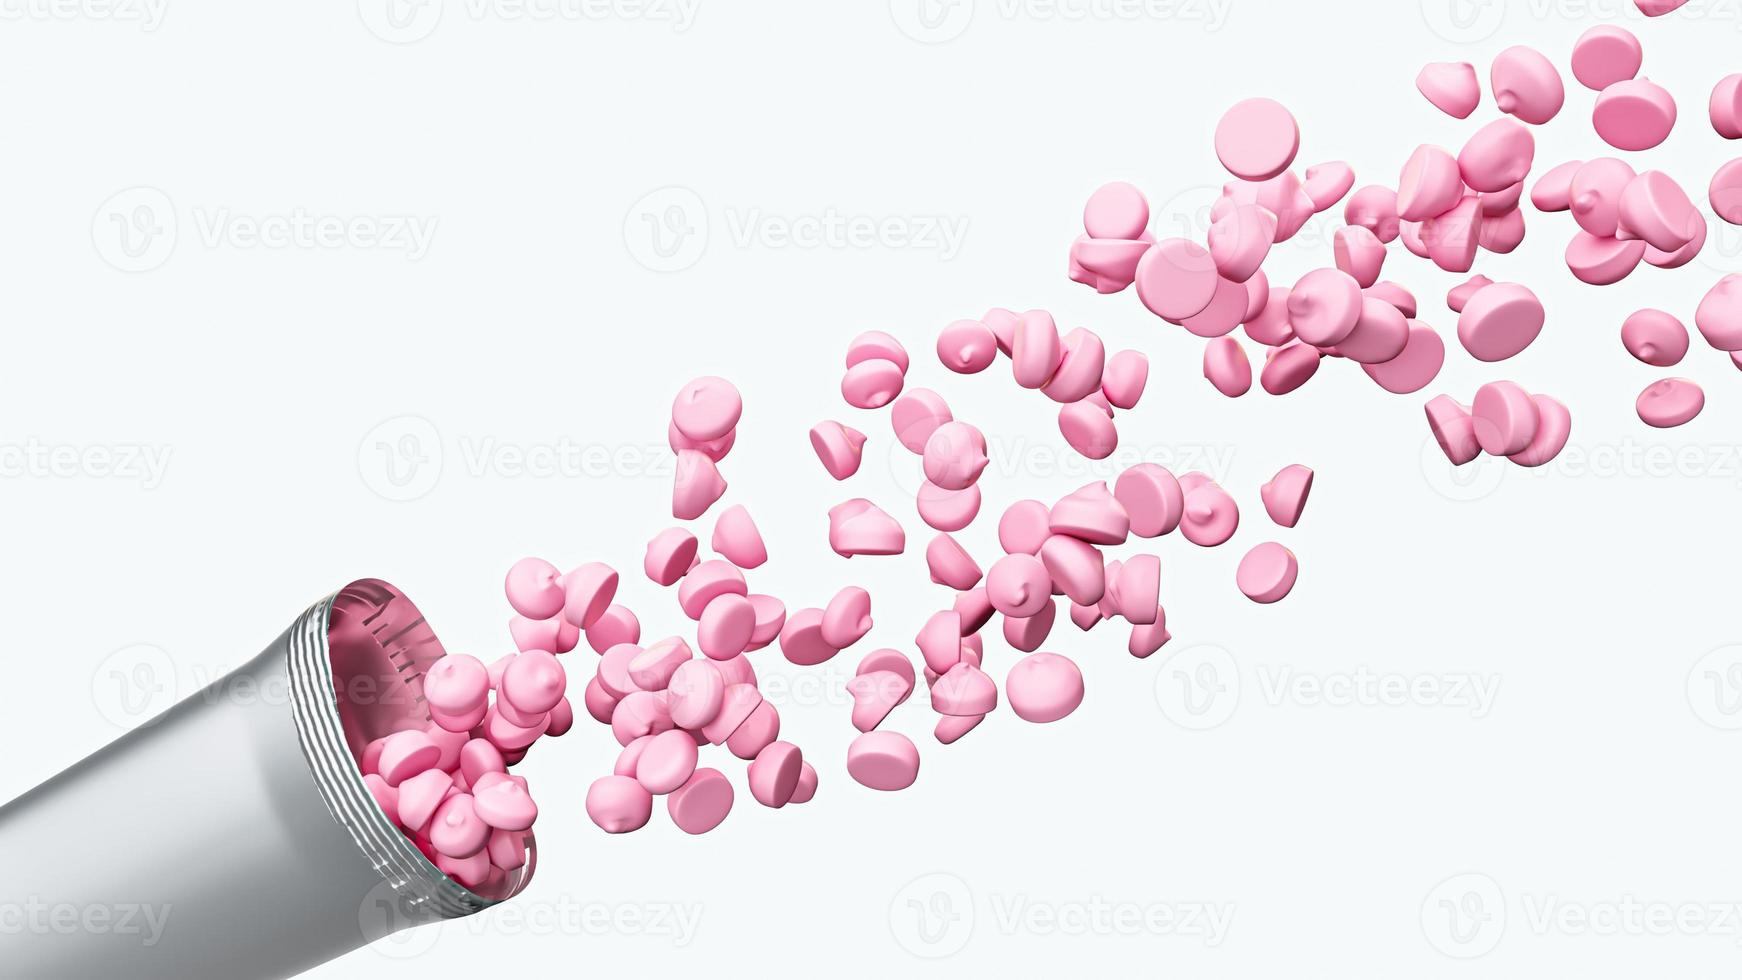 jordgubbsmjölkschips som rinner ut från snacksförpackningen i 3d-illustration, hög med godis med flera godisar foto